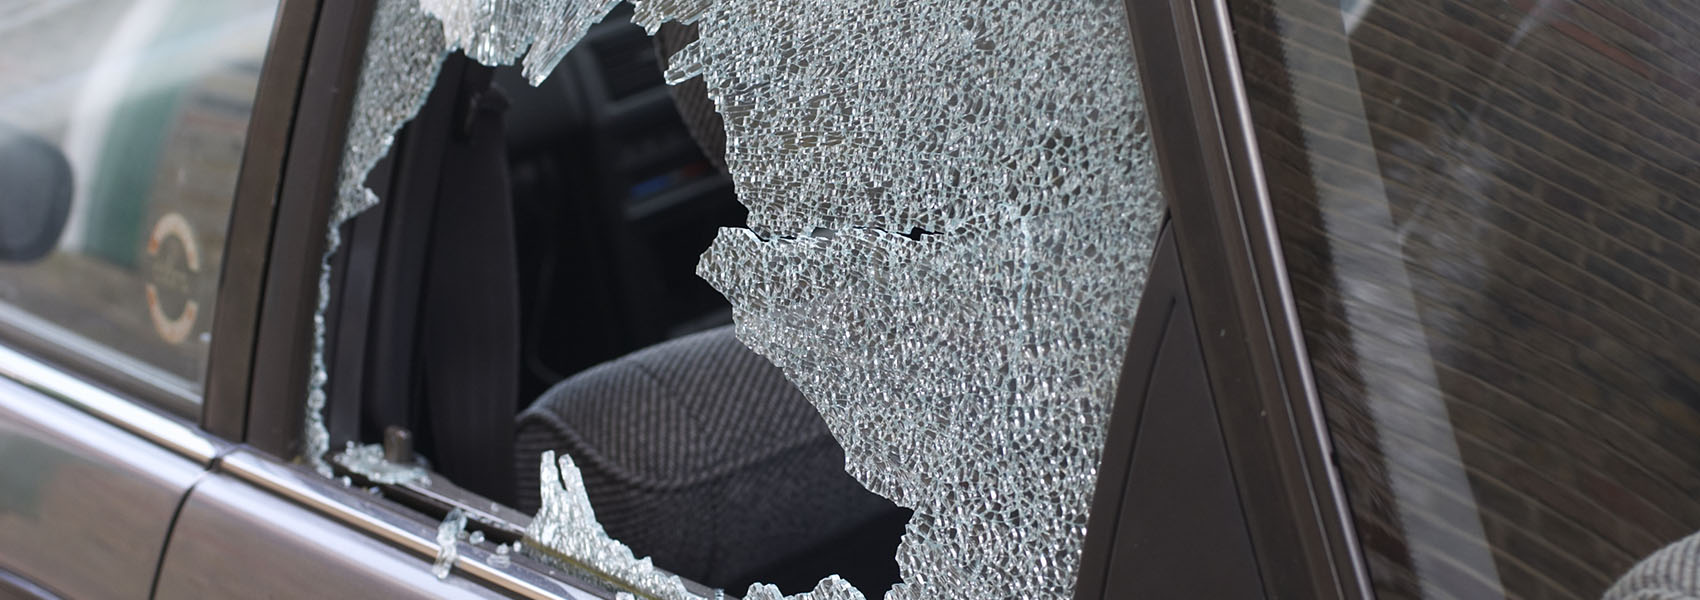 broken glass in car window 